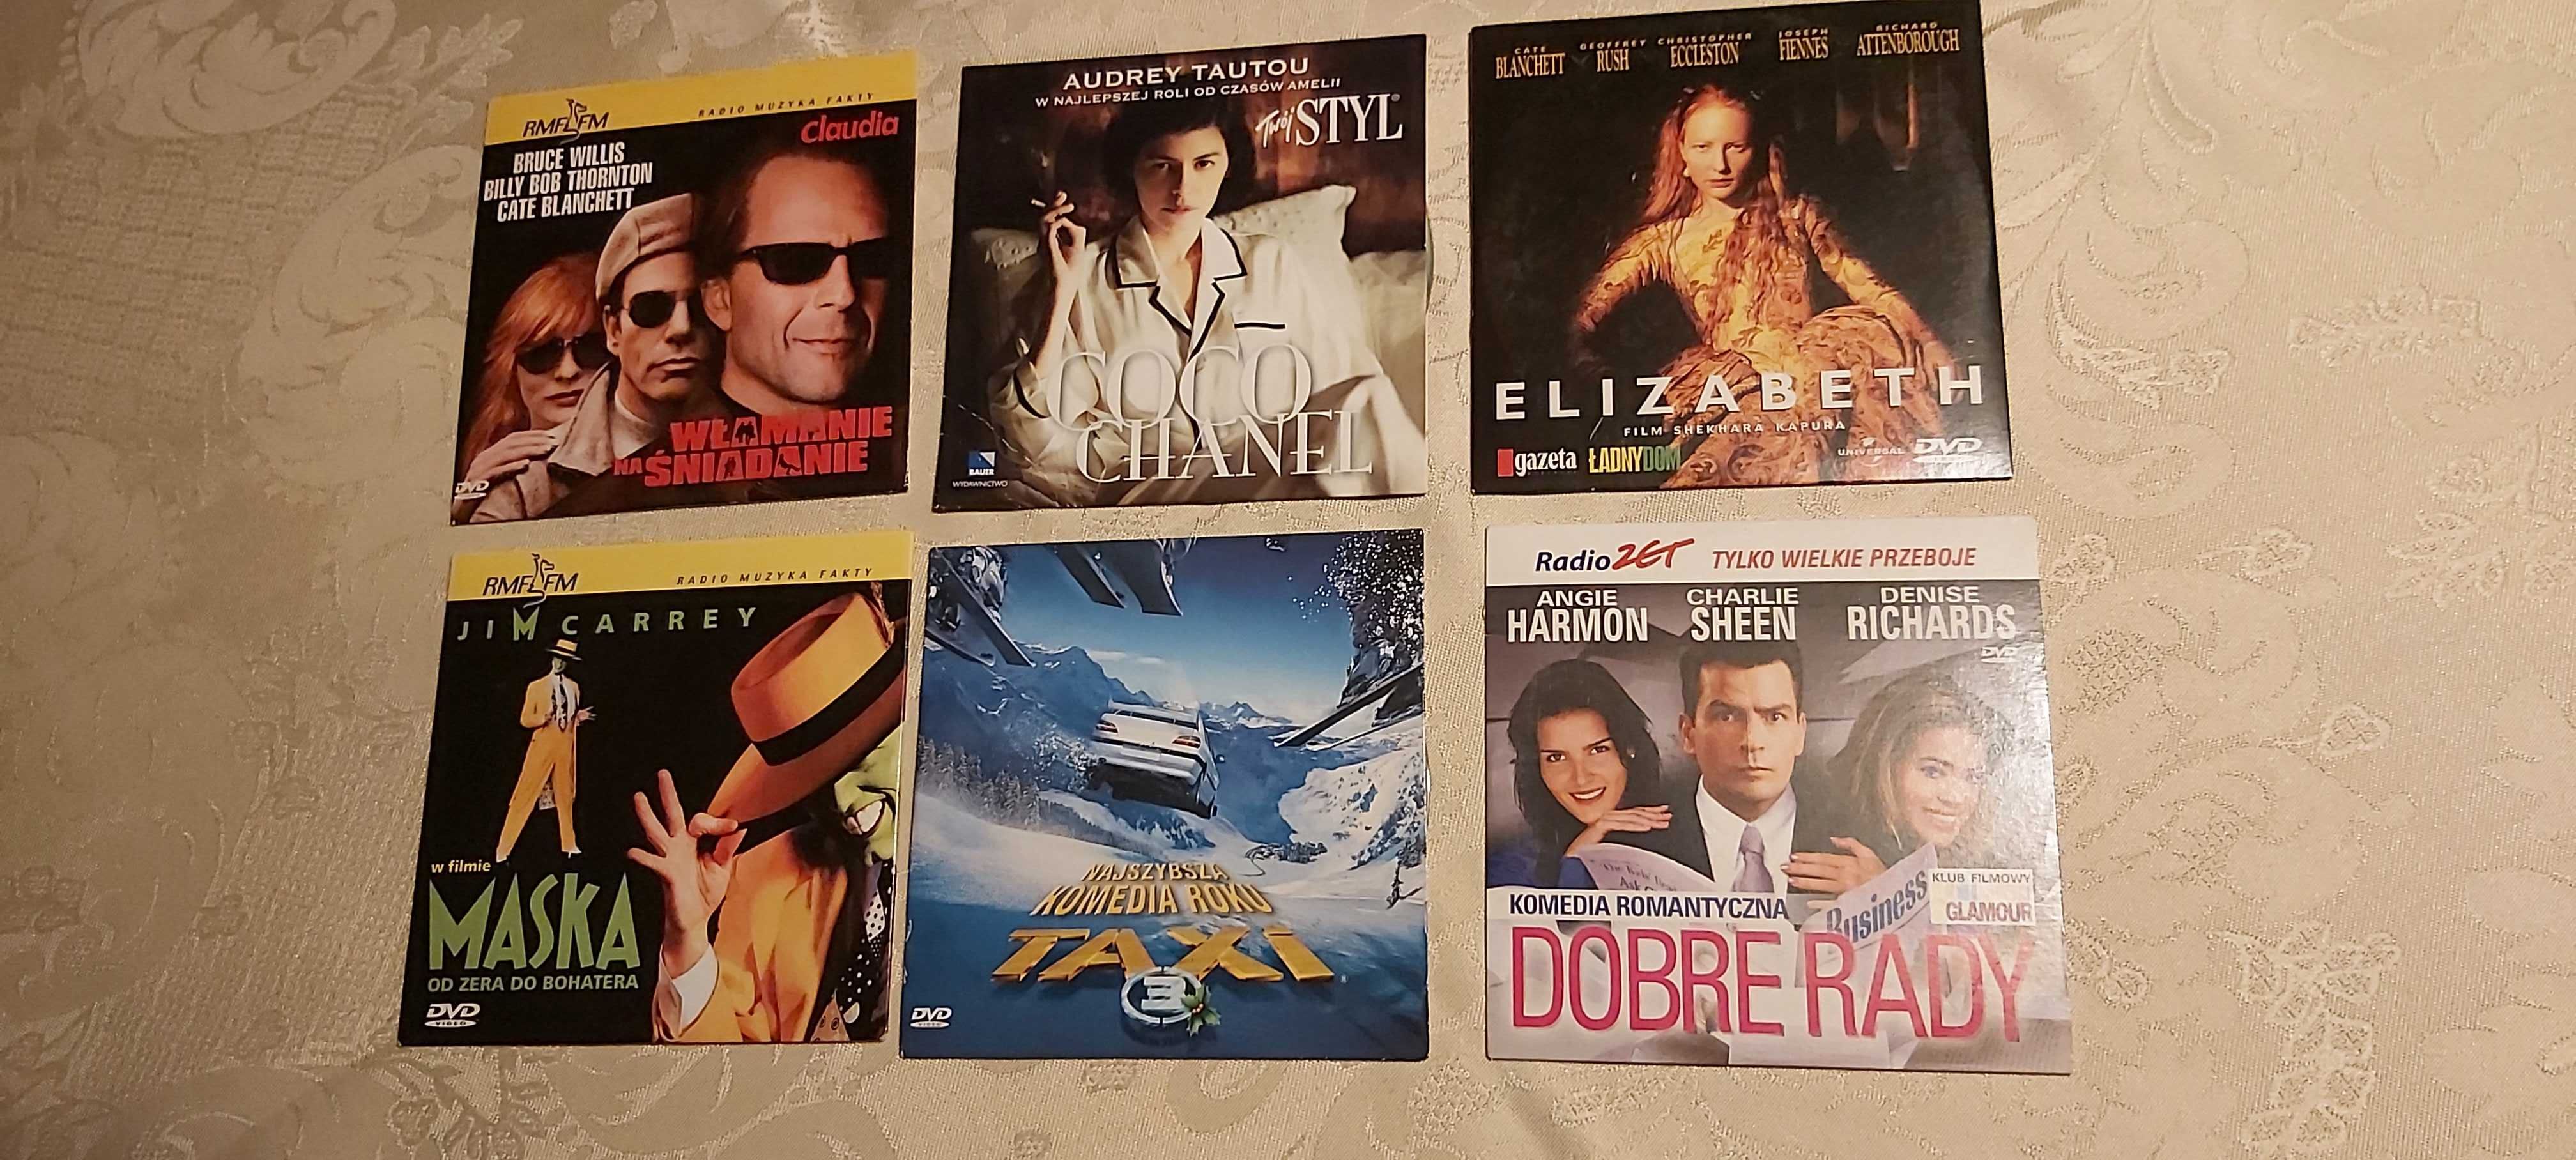 6 filmów DVD: Maska, Elizabeth, Coco Chanel, Taxi 3, Dobre rady